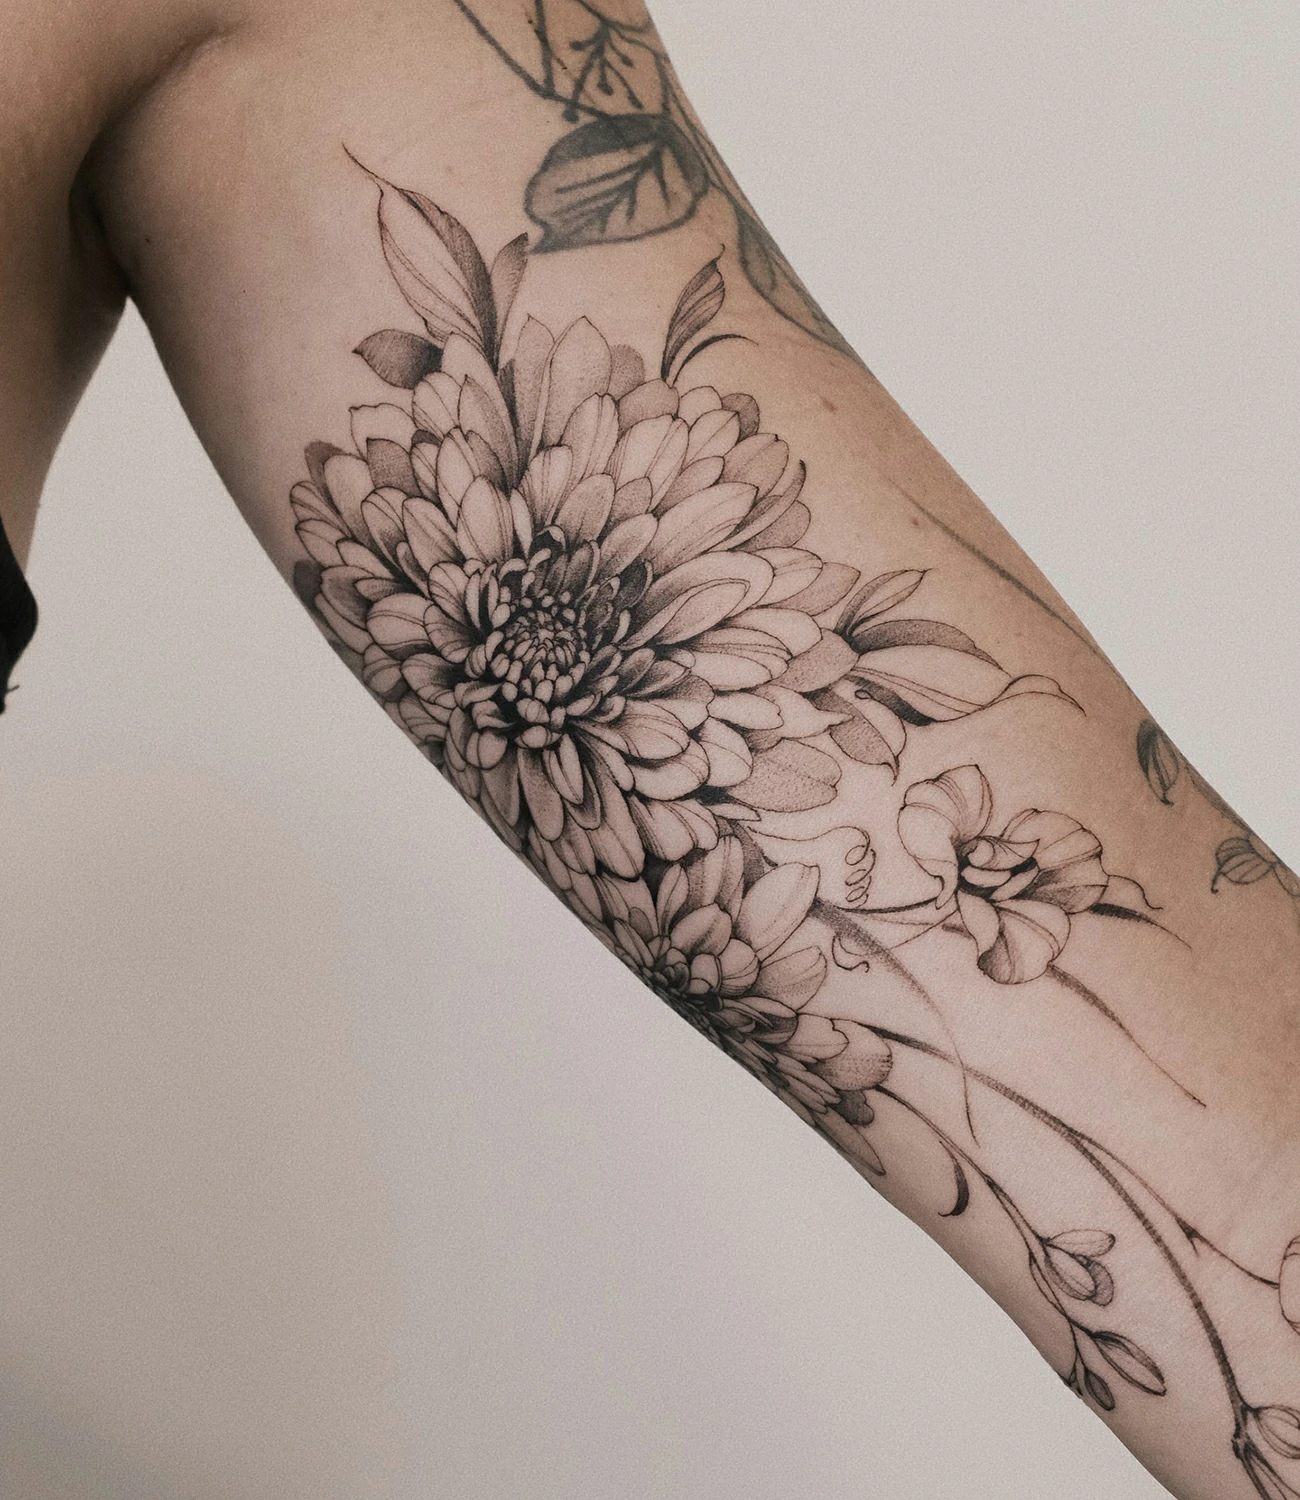 Chrysanthemum Tattoo Black and White #chrysanthemumtattoo